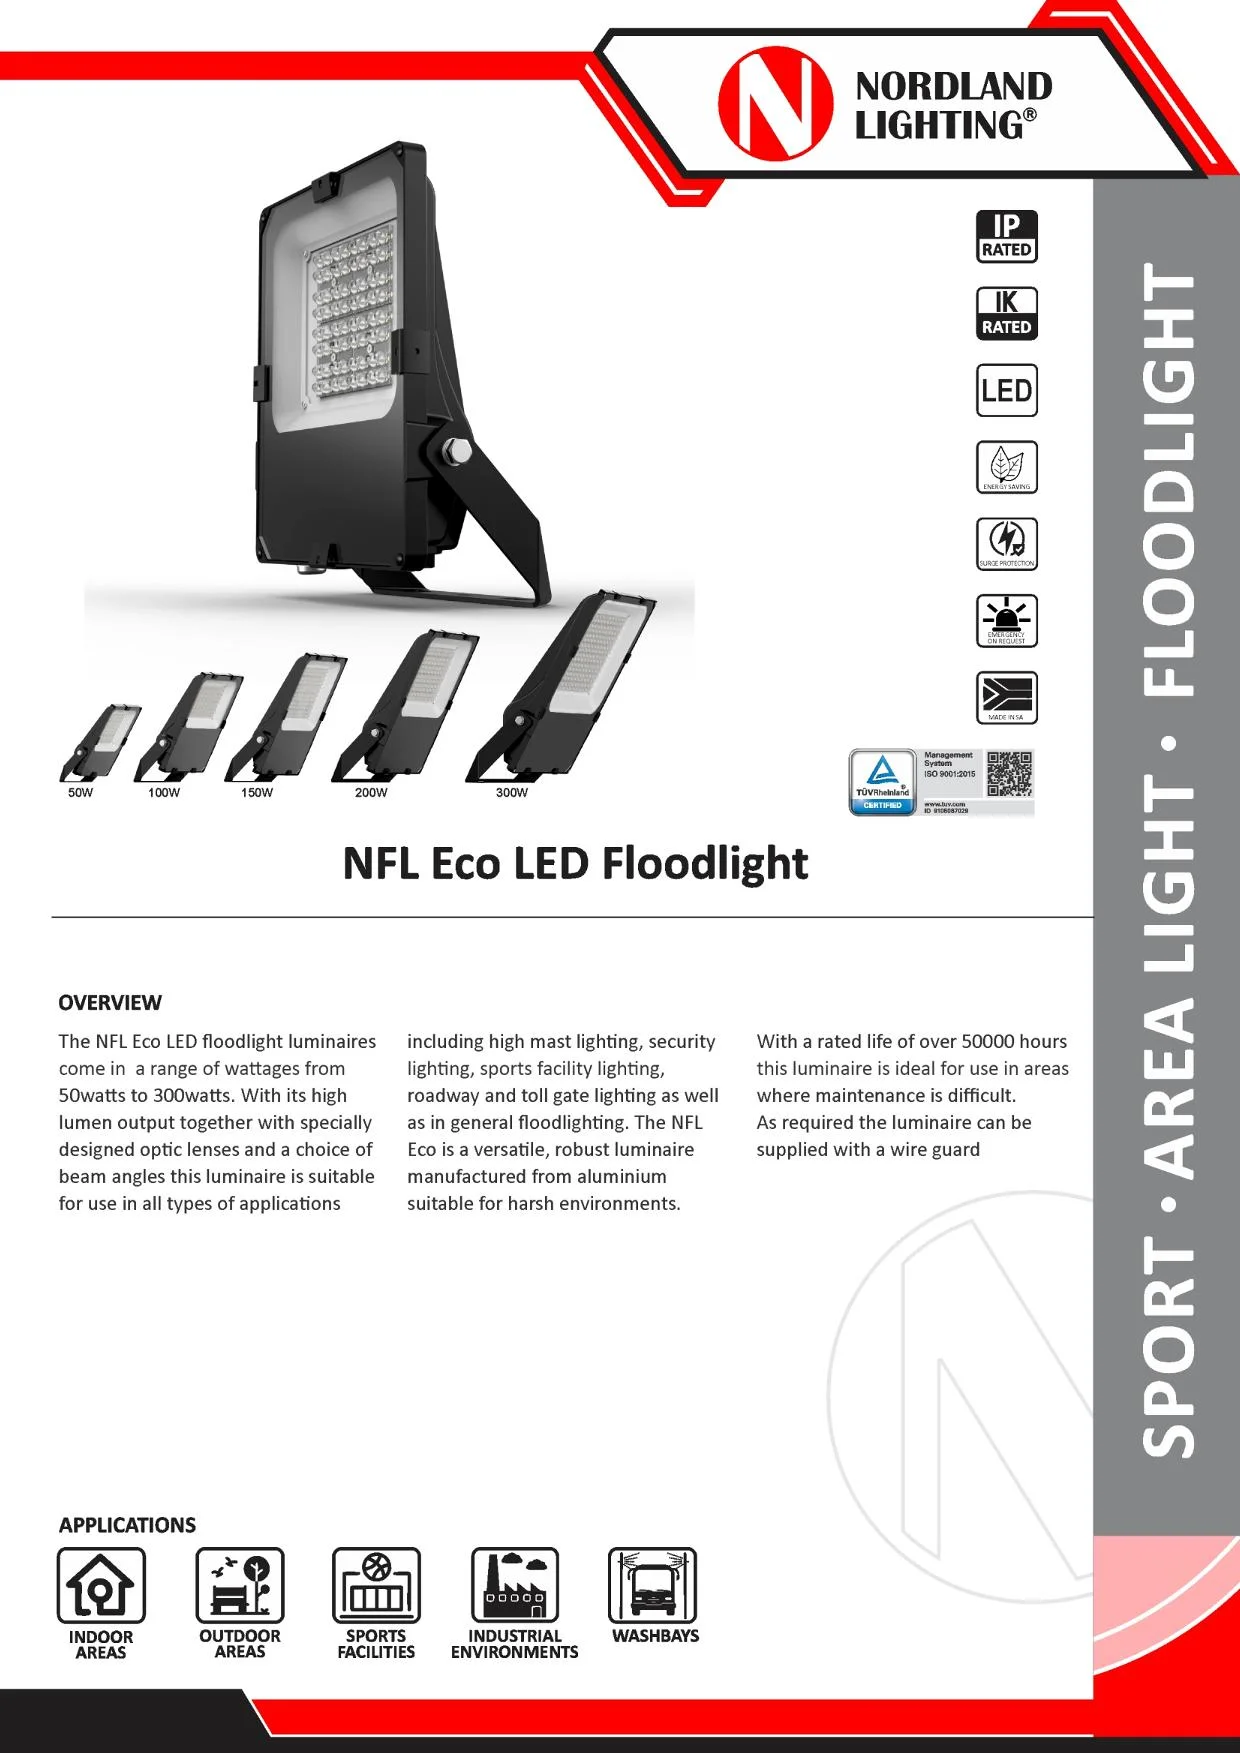 NL25 Nordland NFL Eco LED Floodlight Luminaire